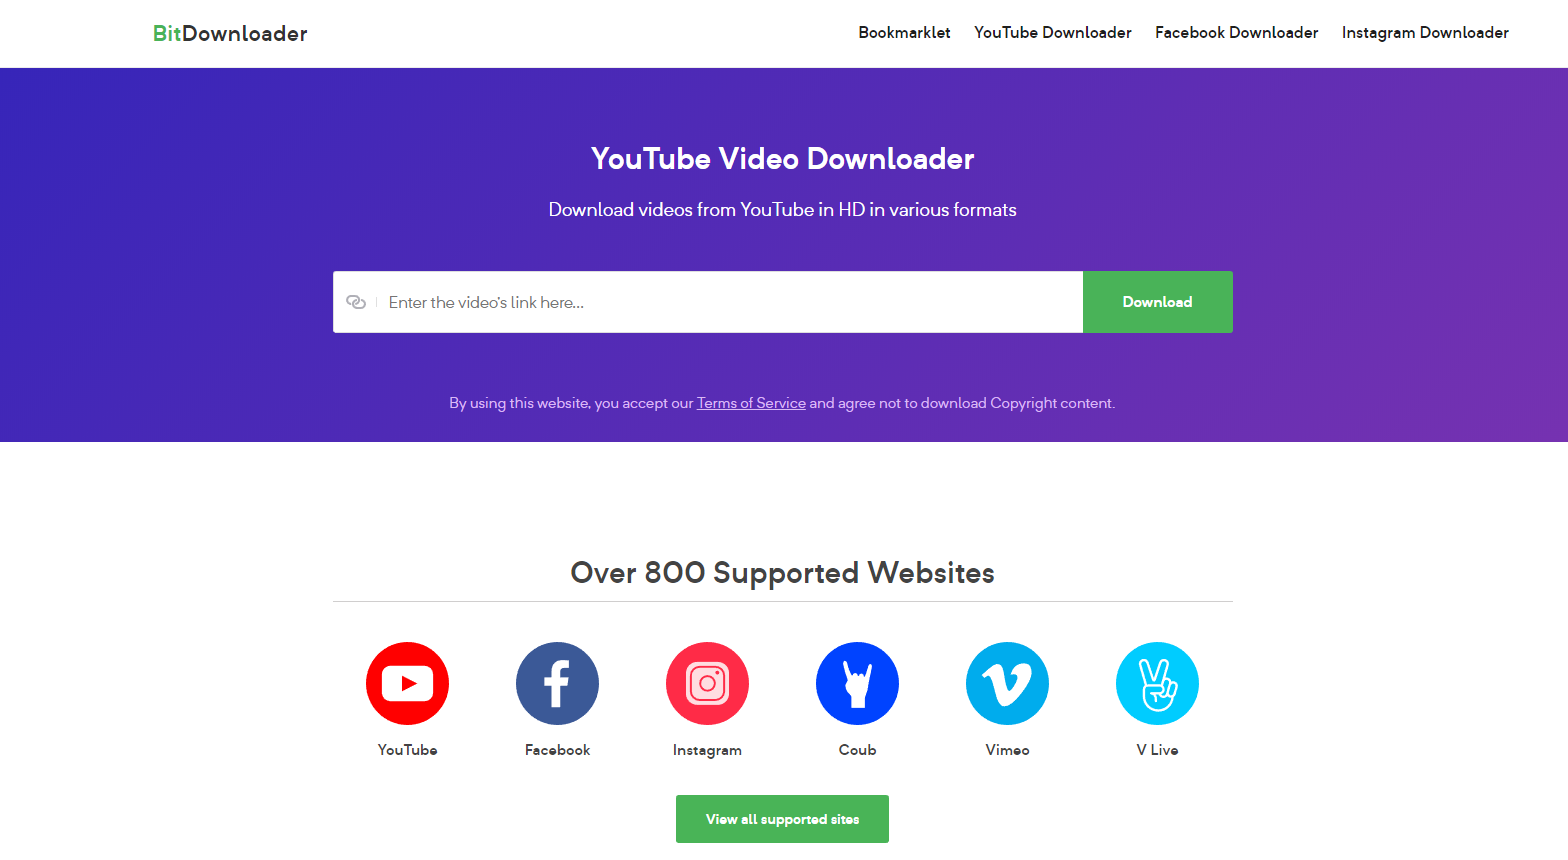 BitDownloader - Download V Live Videos in HD